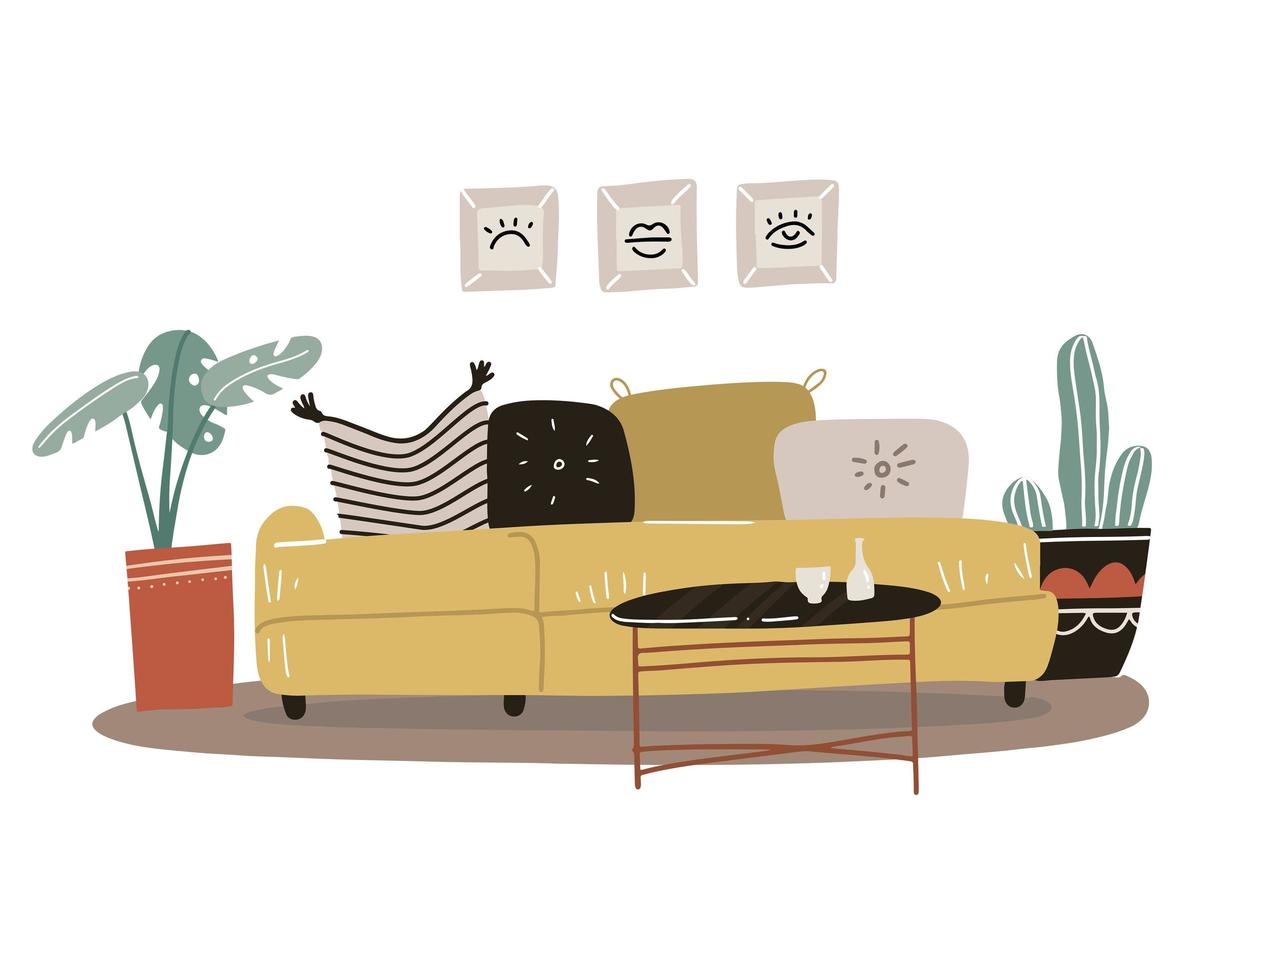 concept d'intérieur de salon de style scandinave. canapé jaune isolé avec oreillers et peintures dans des cadres, plantes en pot, table basse. illustration vectorielle dessinée à la main à plat. vecteur